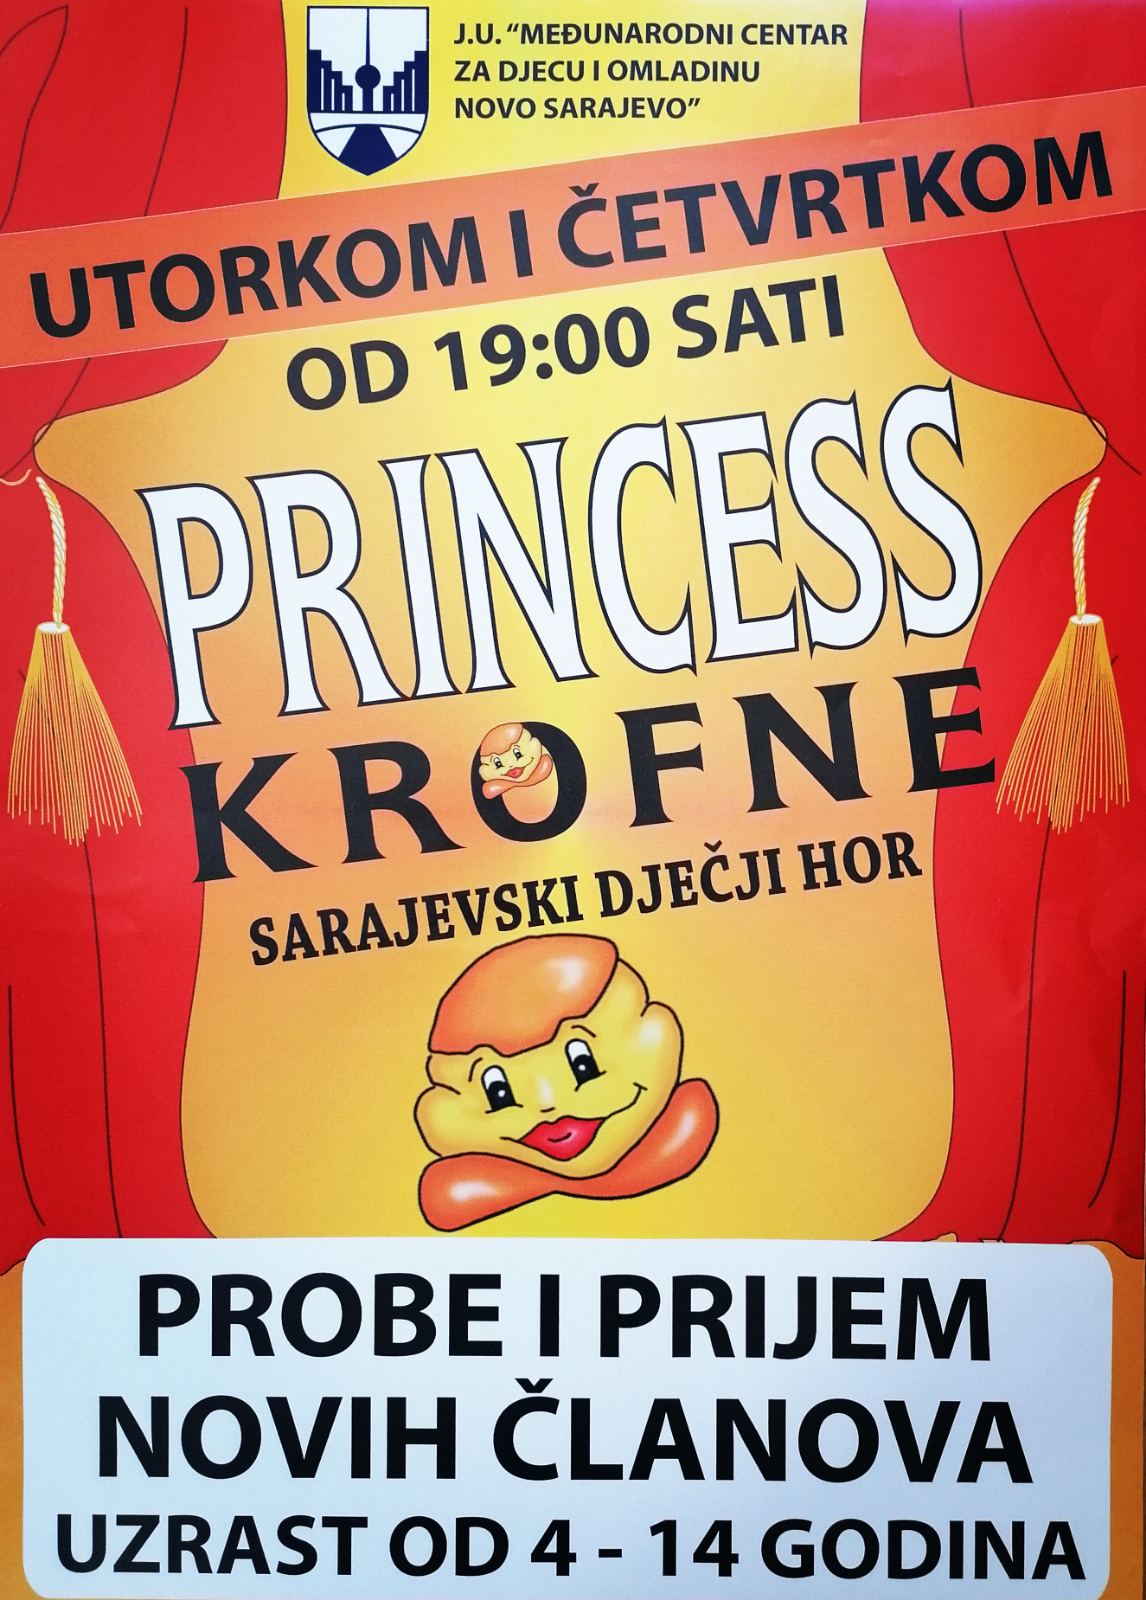 You are currently viewing PRIJEM NOVIH ČLANOVA – PRINCESS KROFNE